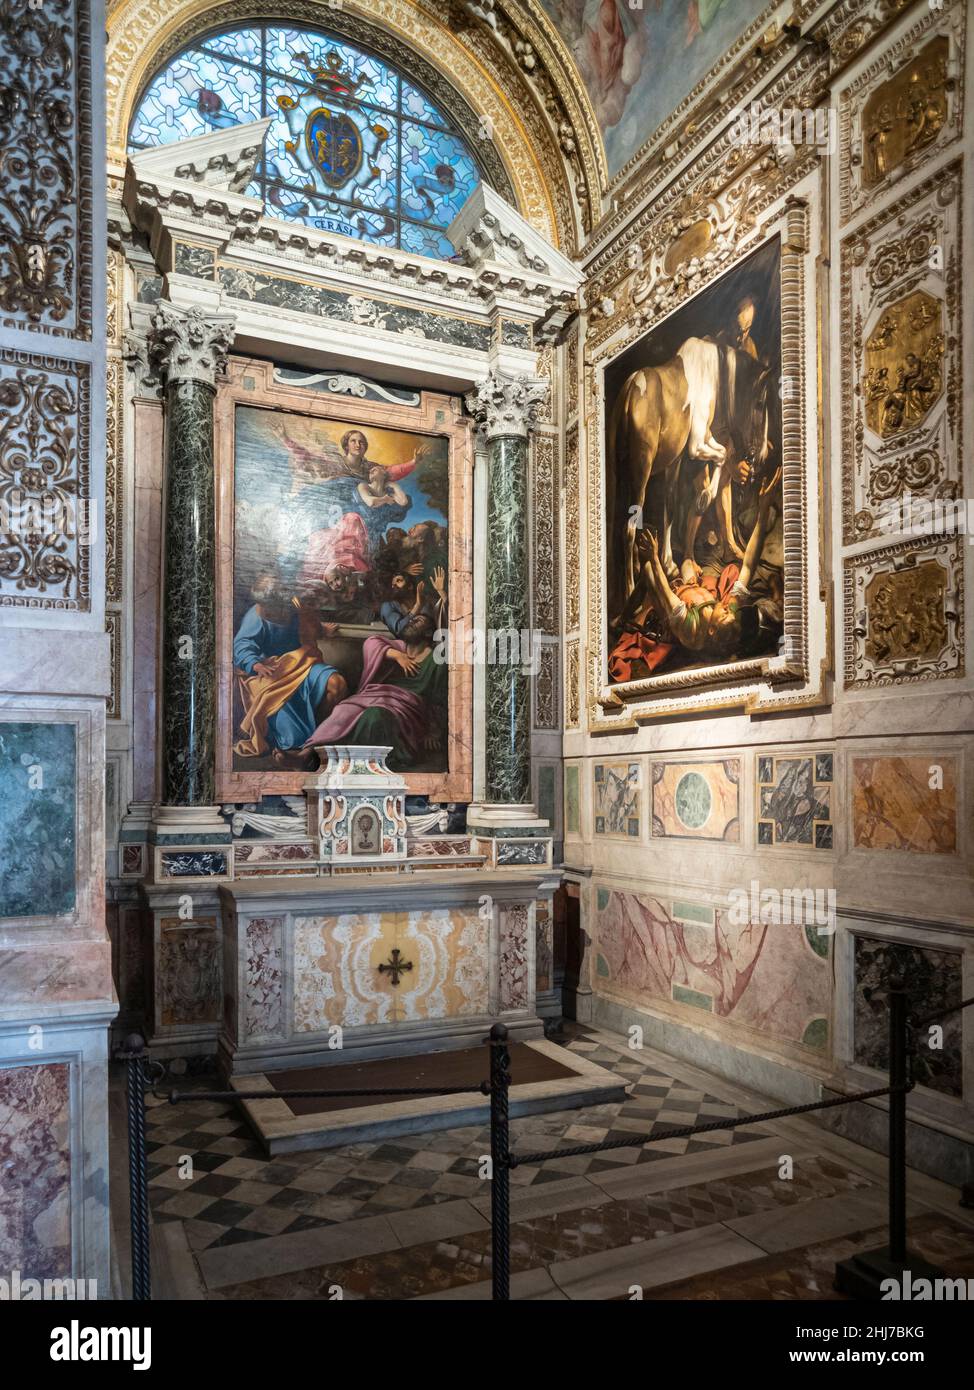 Roma. Italia. Basilica di Santa Maria del Popolo. La Cappella Cerasi (la Cappella Cerasi). L'Assunzione della Vergine di Annibale Carracci (sinistra), 160 Foto Stock